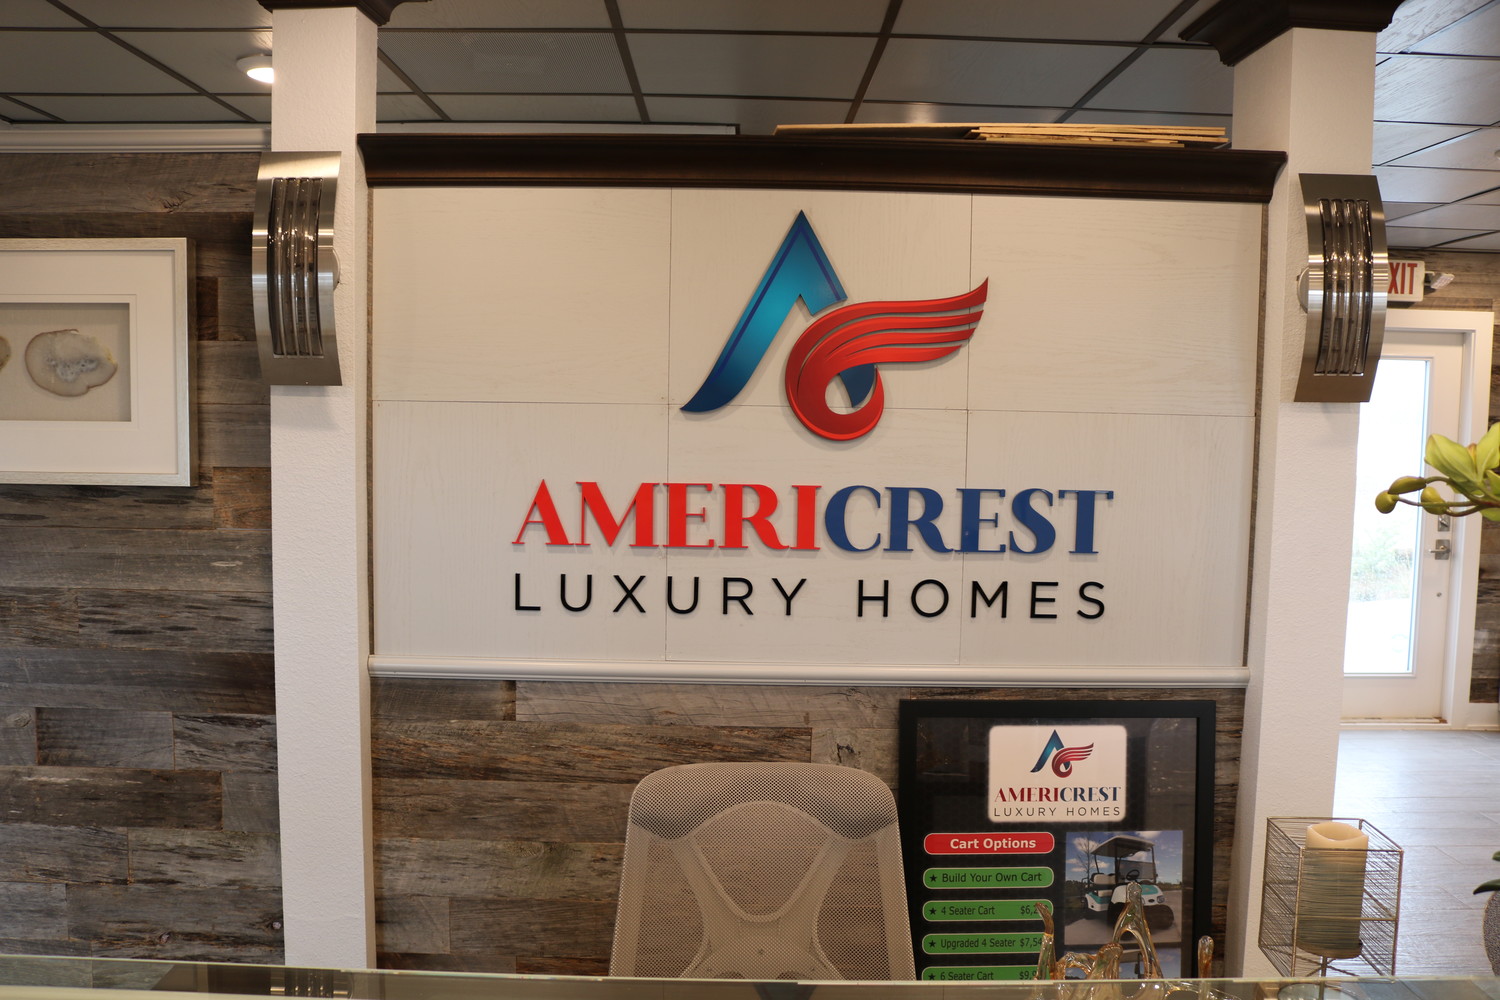 Americrest Luxury Homes is one of three builders at Beachwalk.